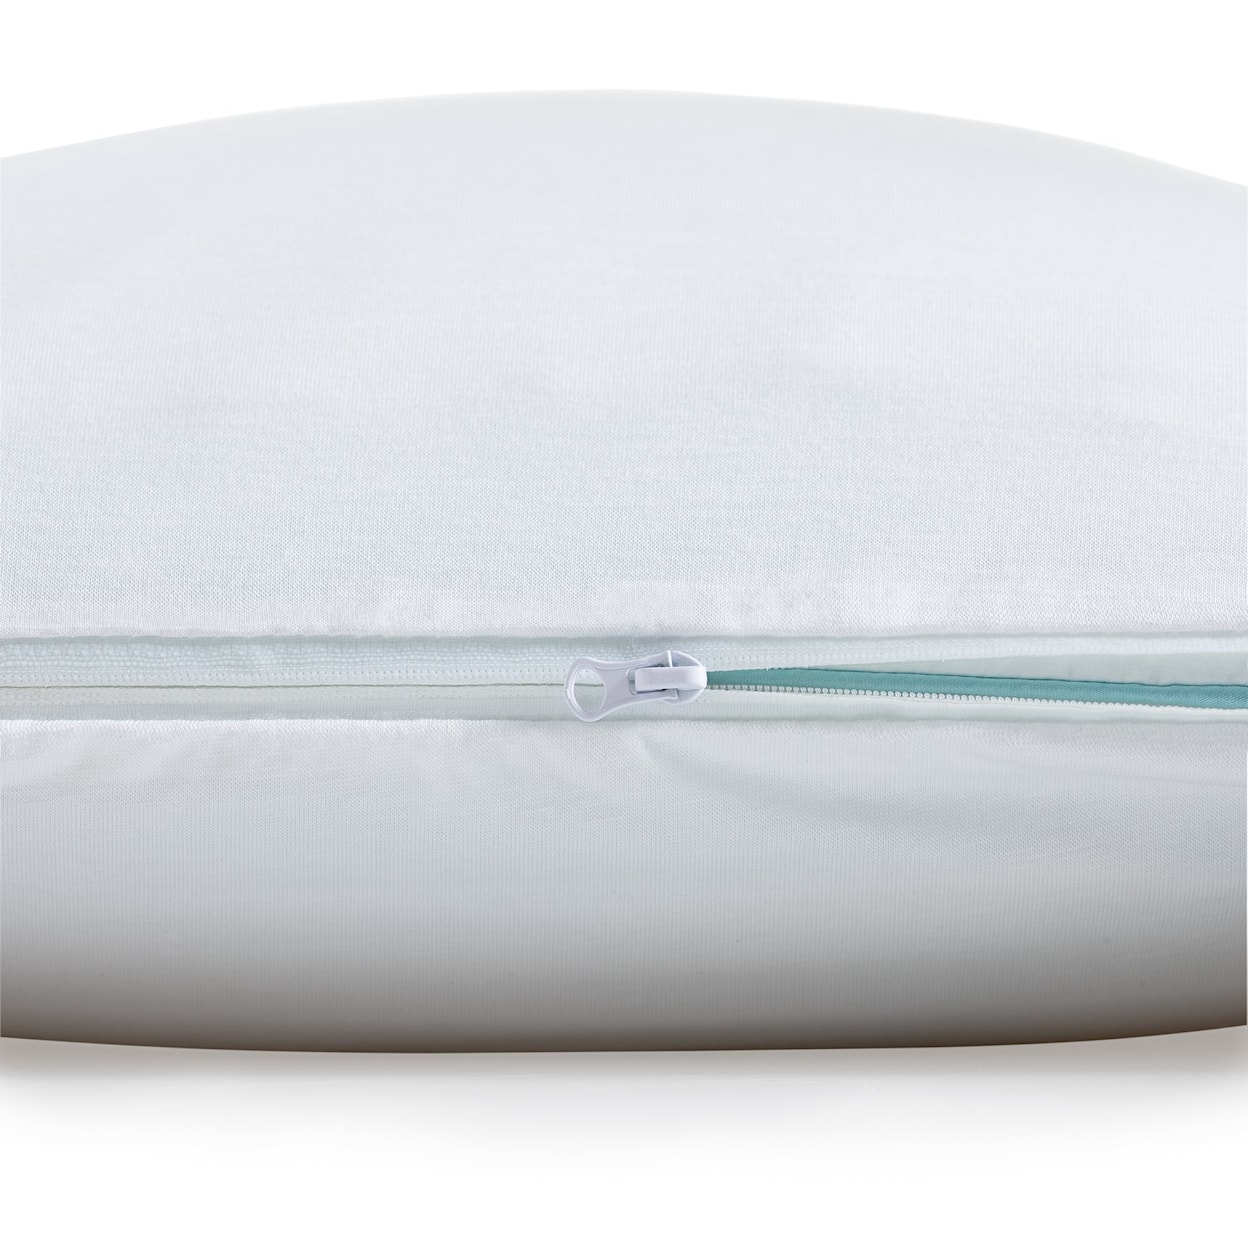 Malouf Malouf Encase® LT Pillow Protector Pillow Protector